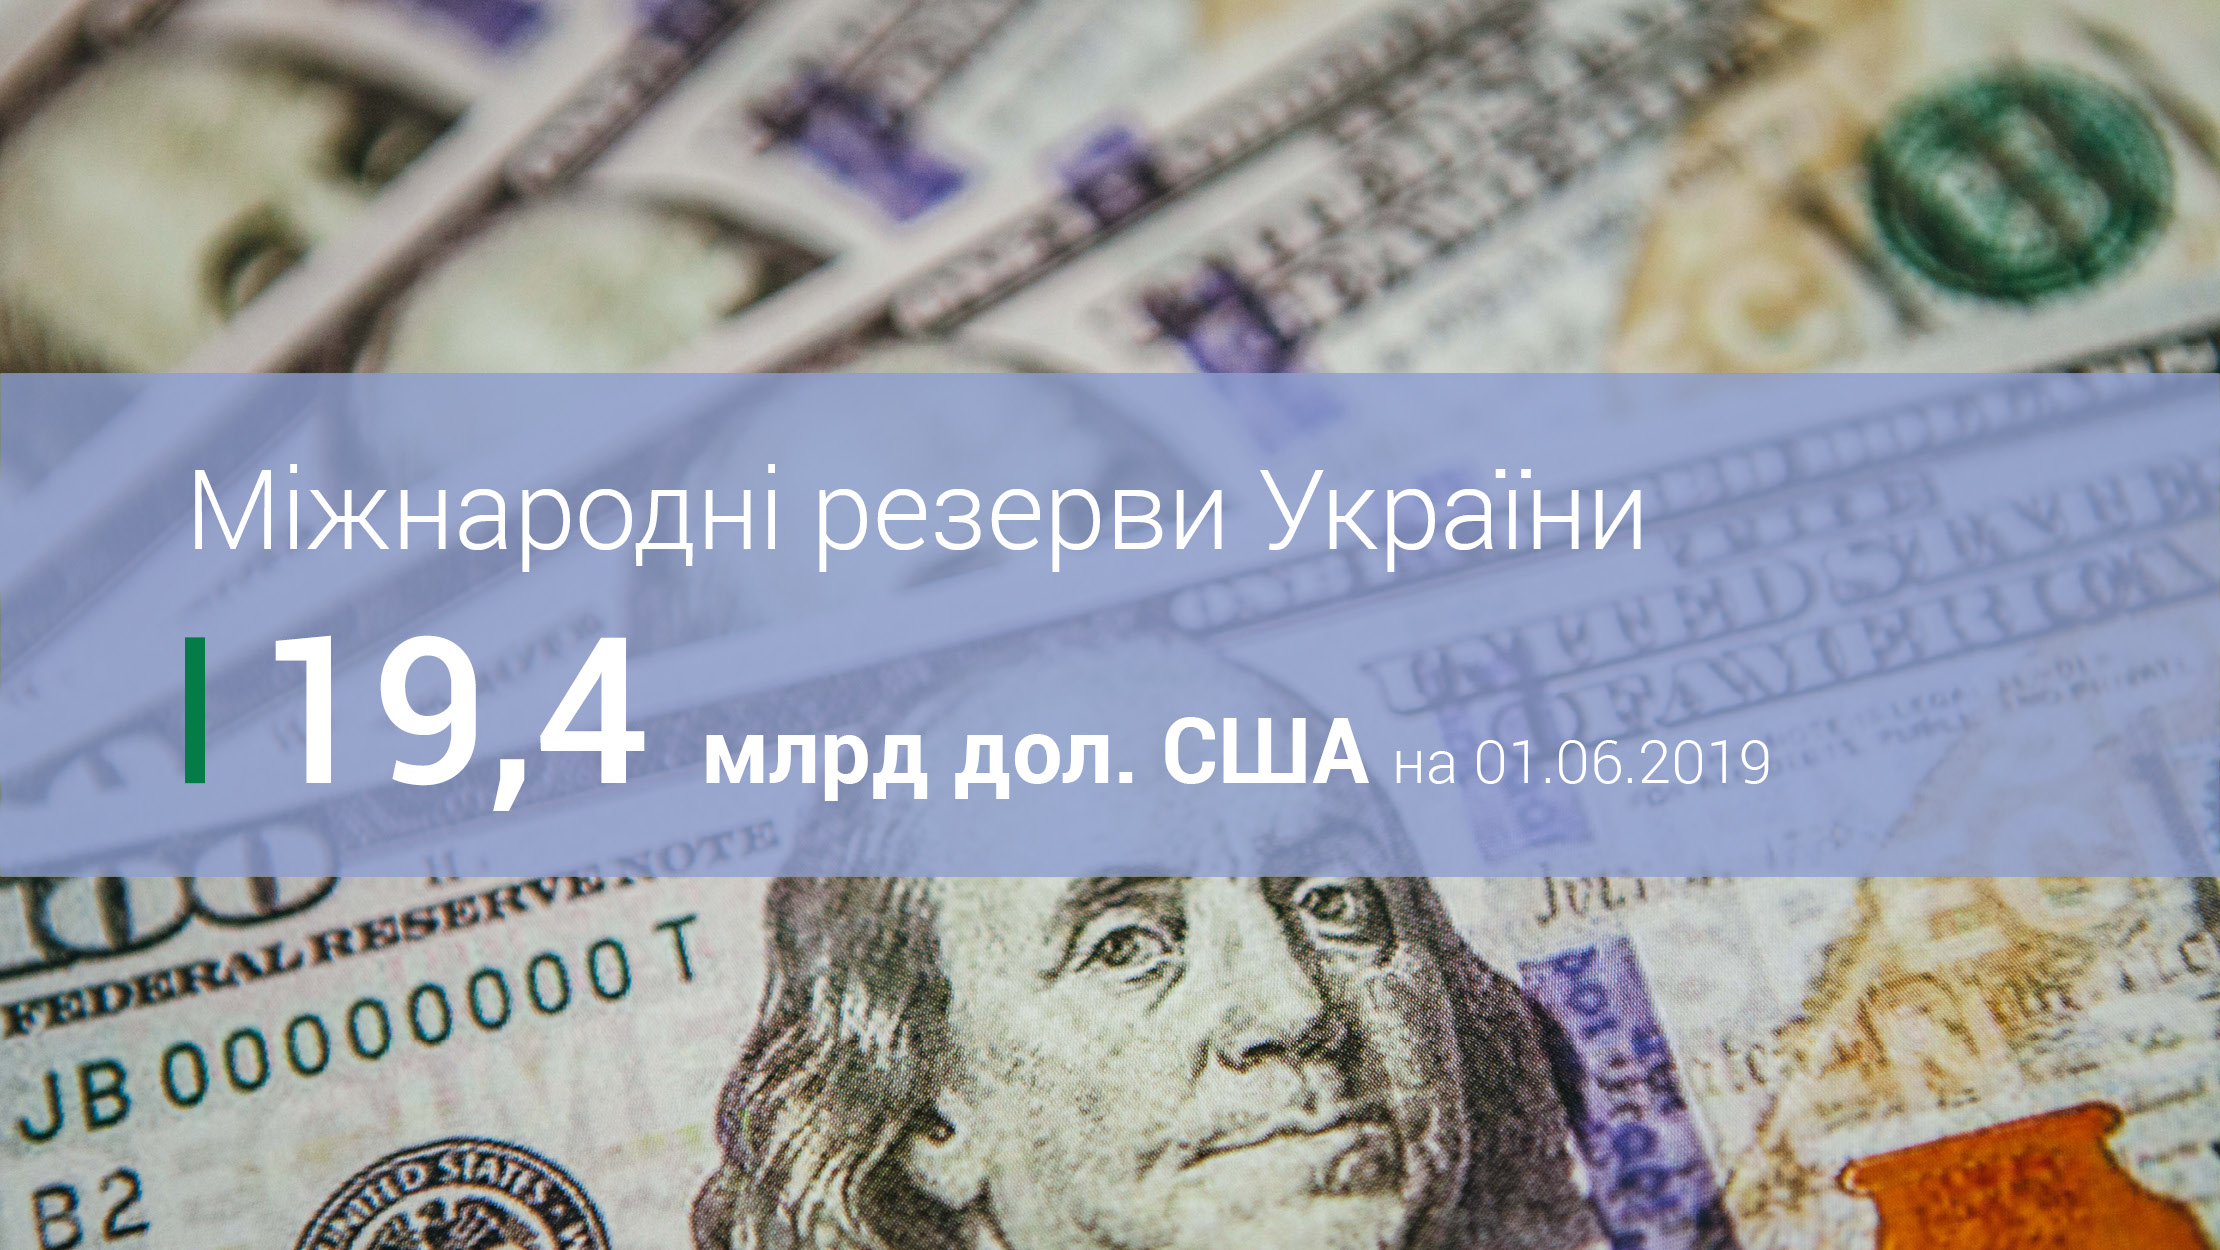 Міжнародні резерви України становили 19,4 млрд дол. США за підсумками травня 2019 року